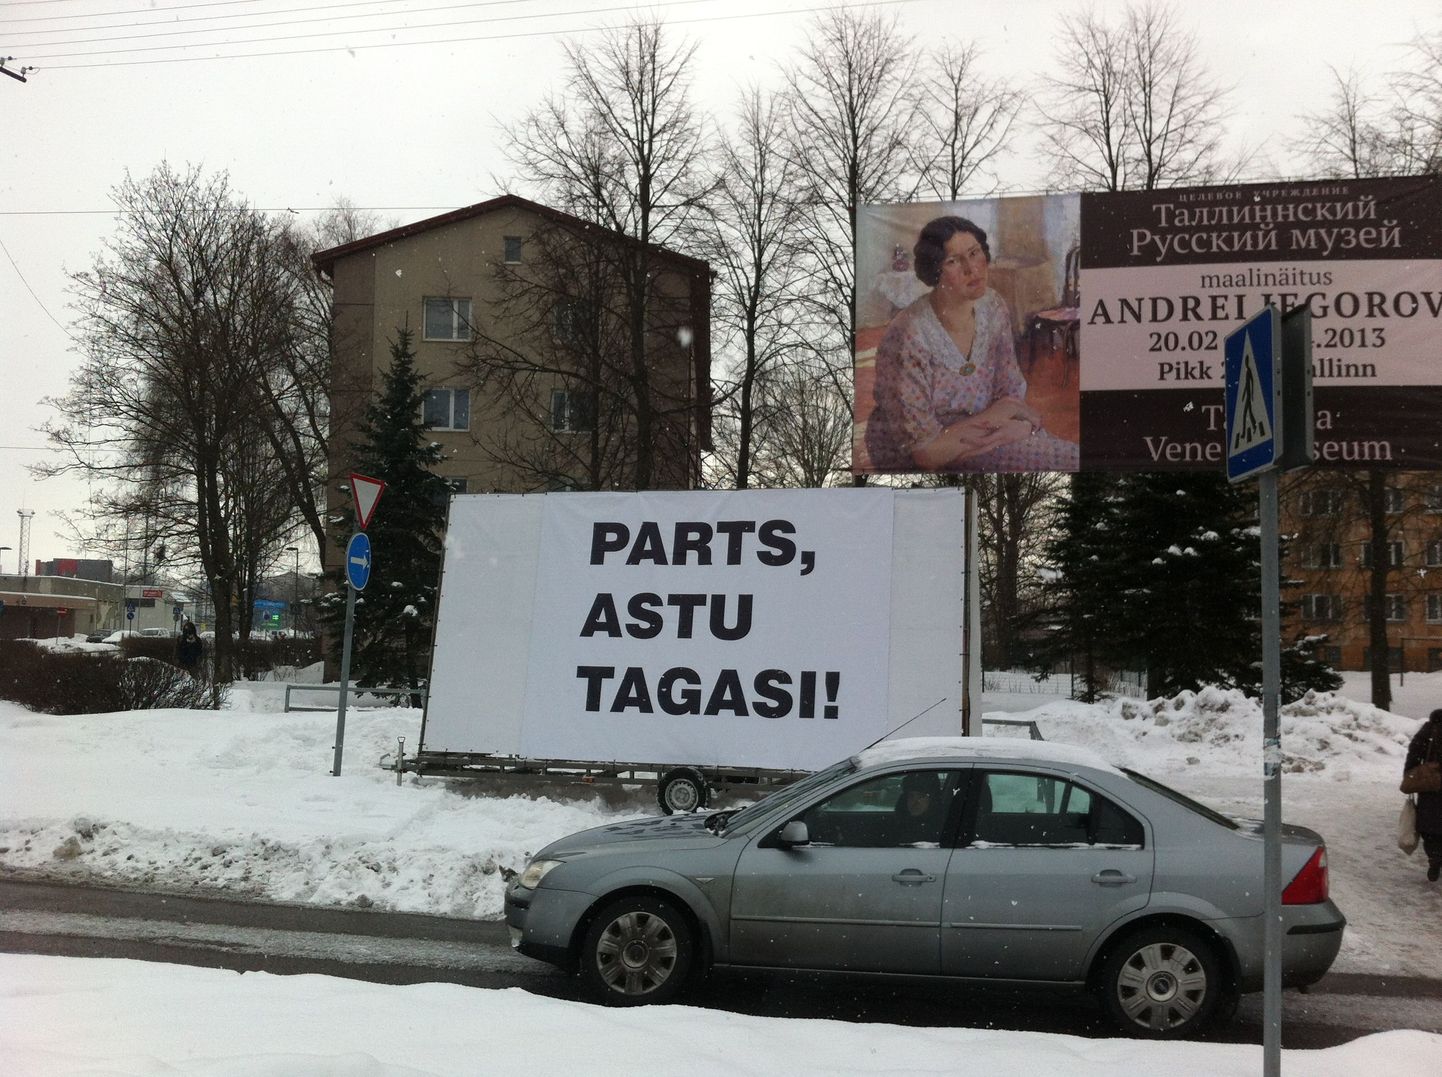 Veebruari lõpus Kristiine keskuse juures asuvale parkimisplatsile seatud plakat.